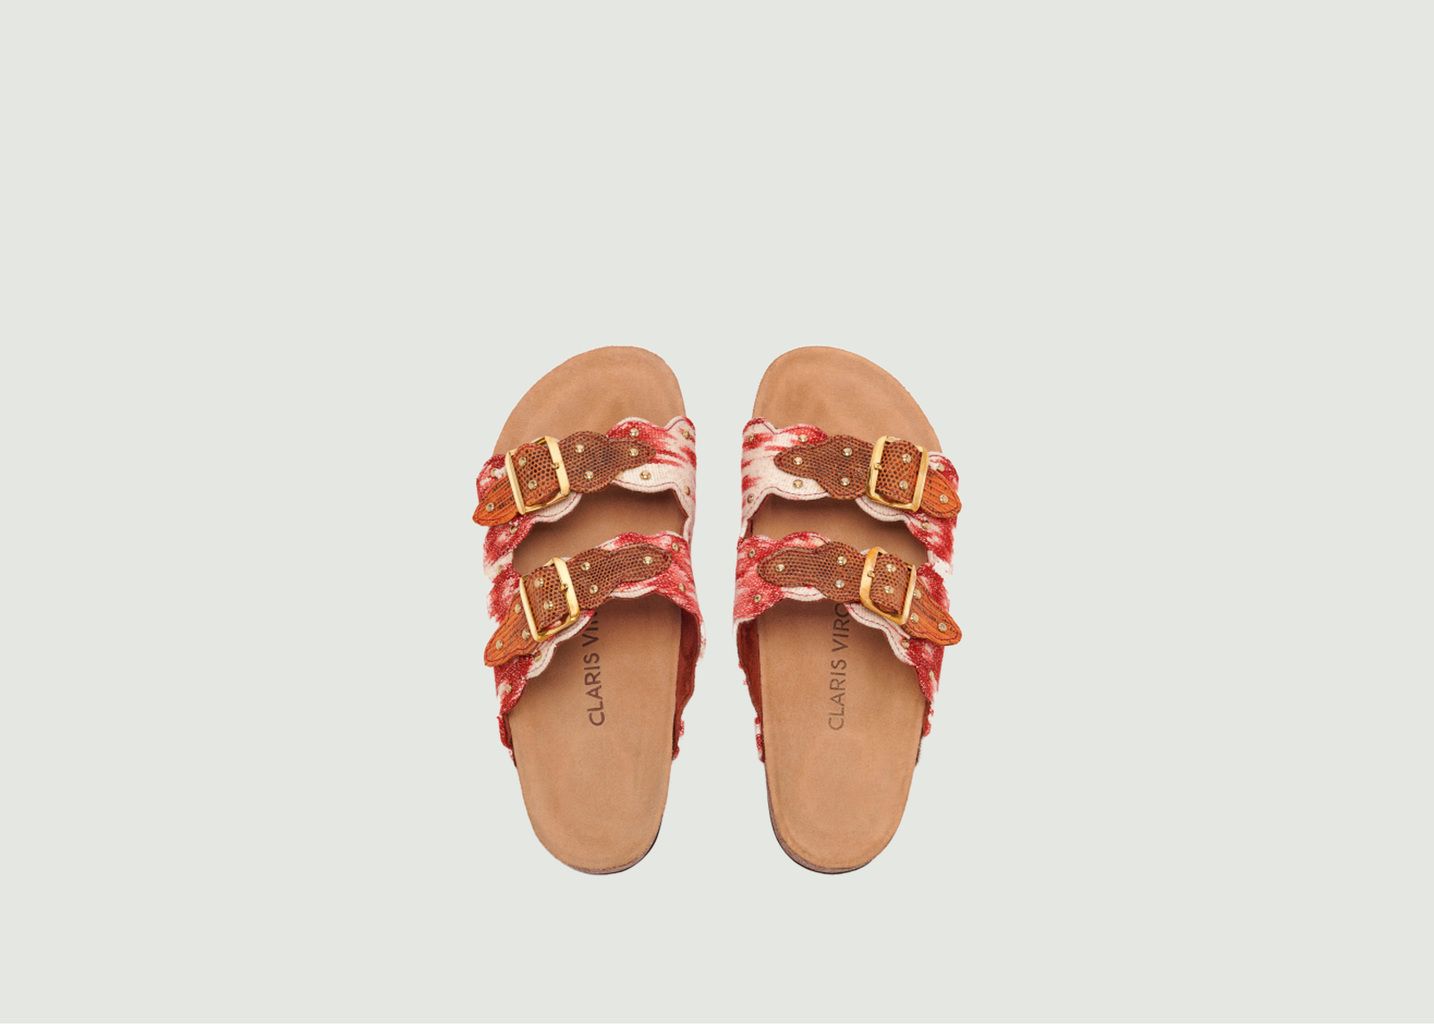  Gold studded sandals Odette - Claris Virot